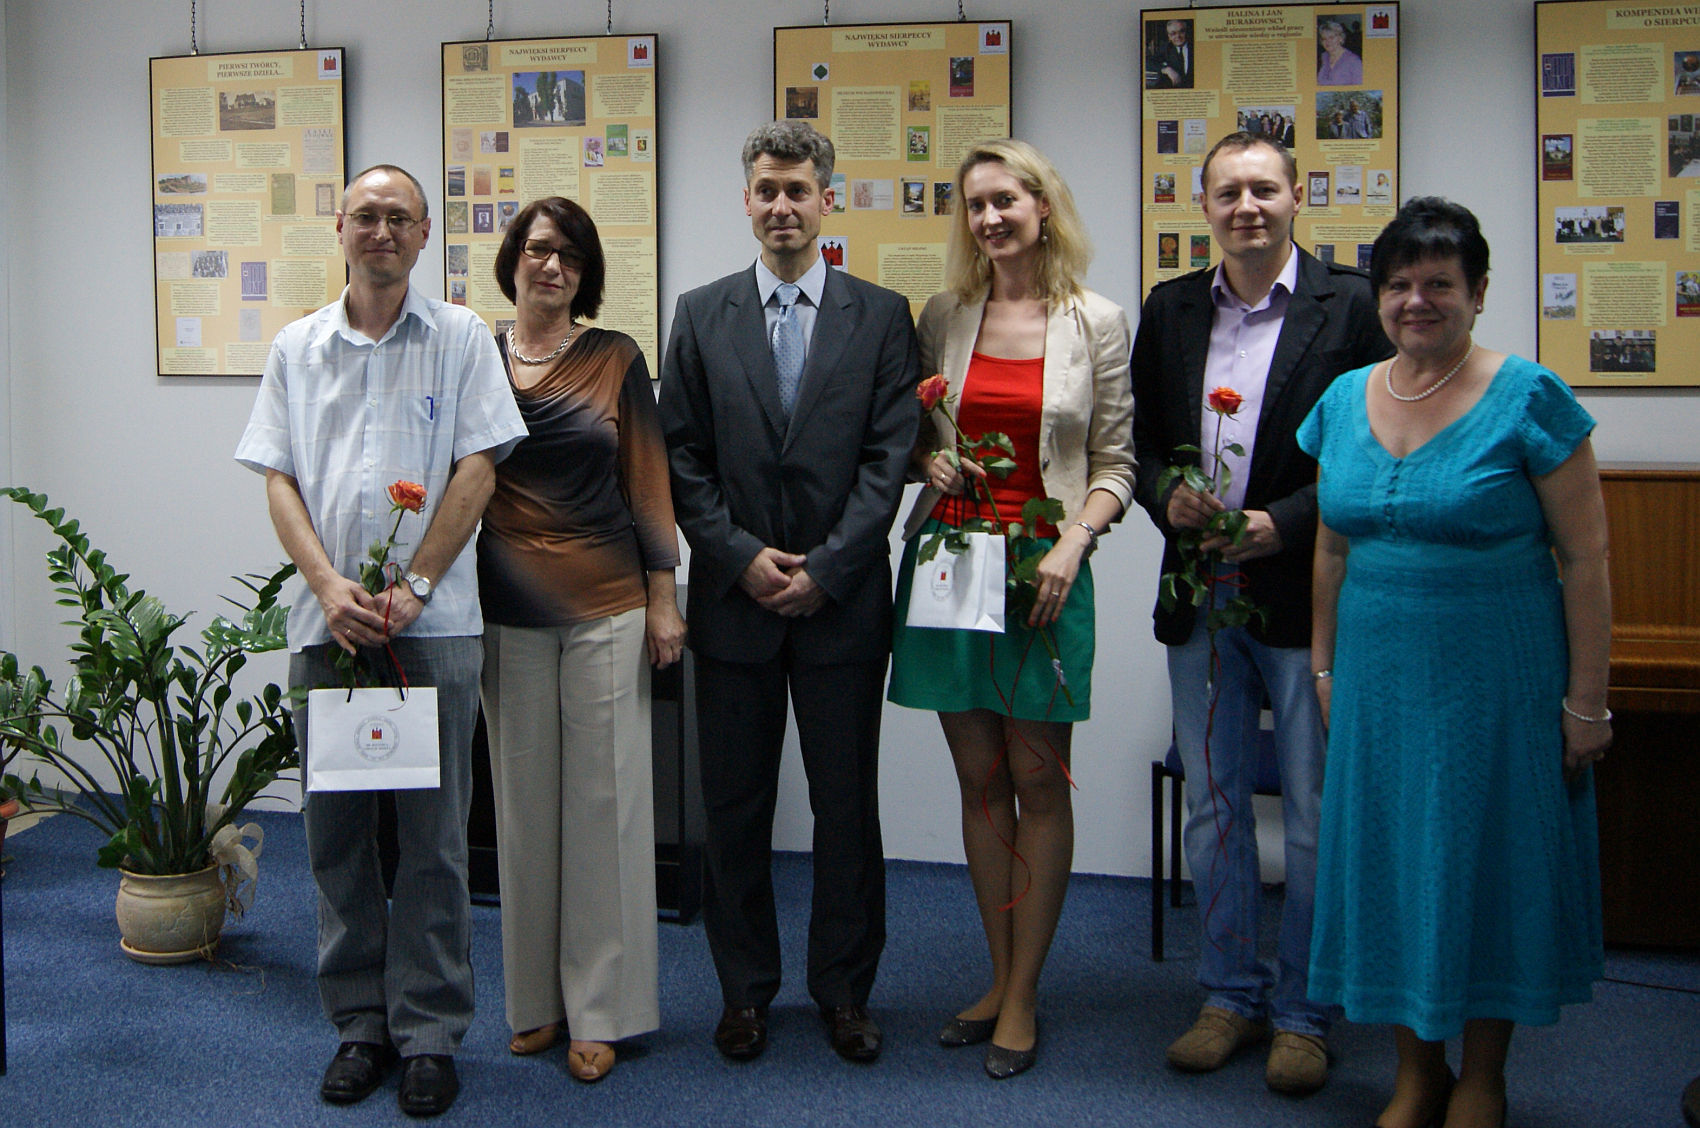 Wsplna fotografia jurorw i organizatorw konkursu, od lewej: Piotr Strugaa, Ewa Jezirska, Marek Zdrojewski, Magdalena Staniszewska, Mariusz Turalski, Maria Winiewska, 14.06.2012 r.